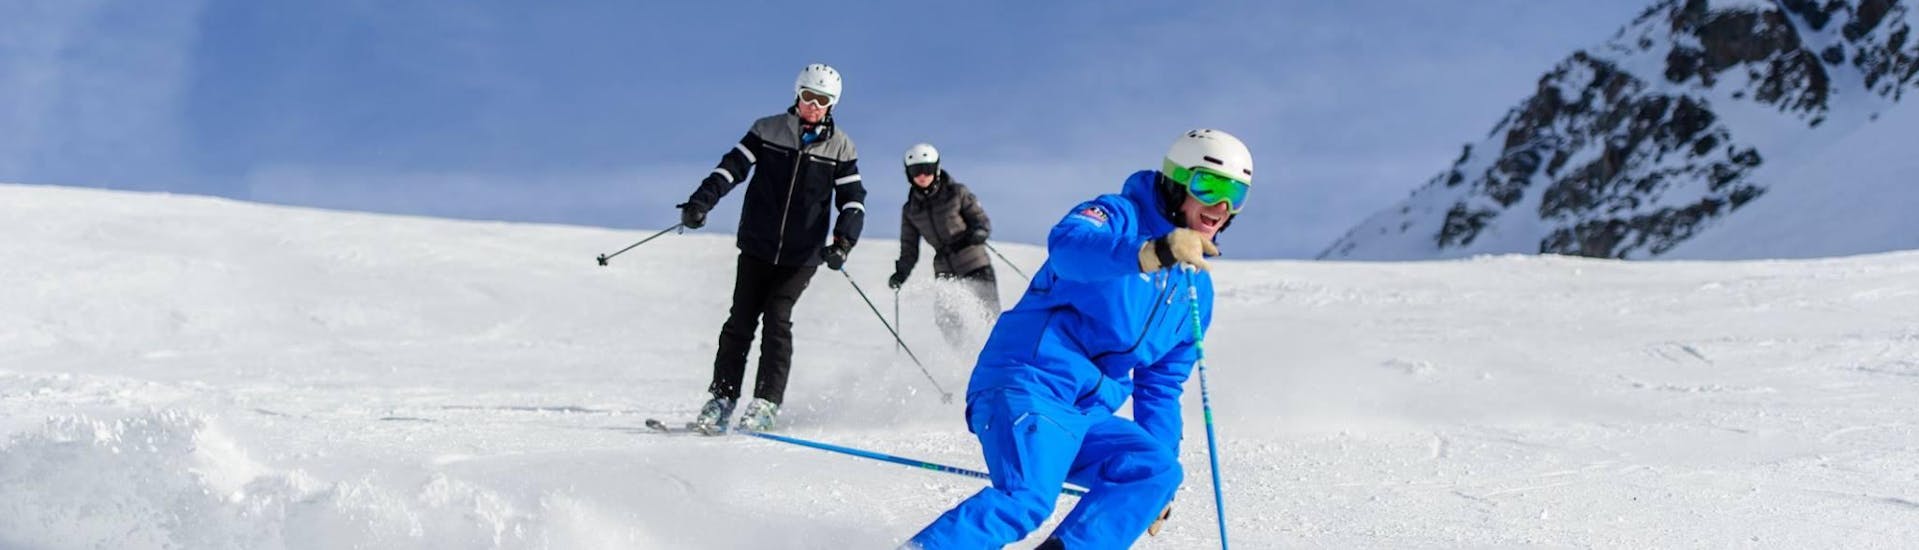 Drie skiërs schieten de berg af tijdens hun privéles off-piste skiën voor alle niveaus met skischool Altitude in Grindelwald en Wengen.